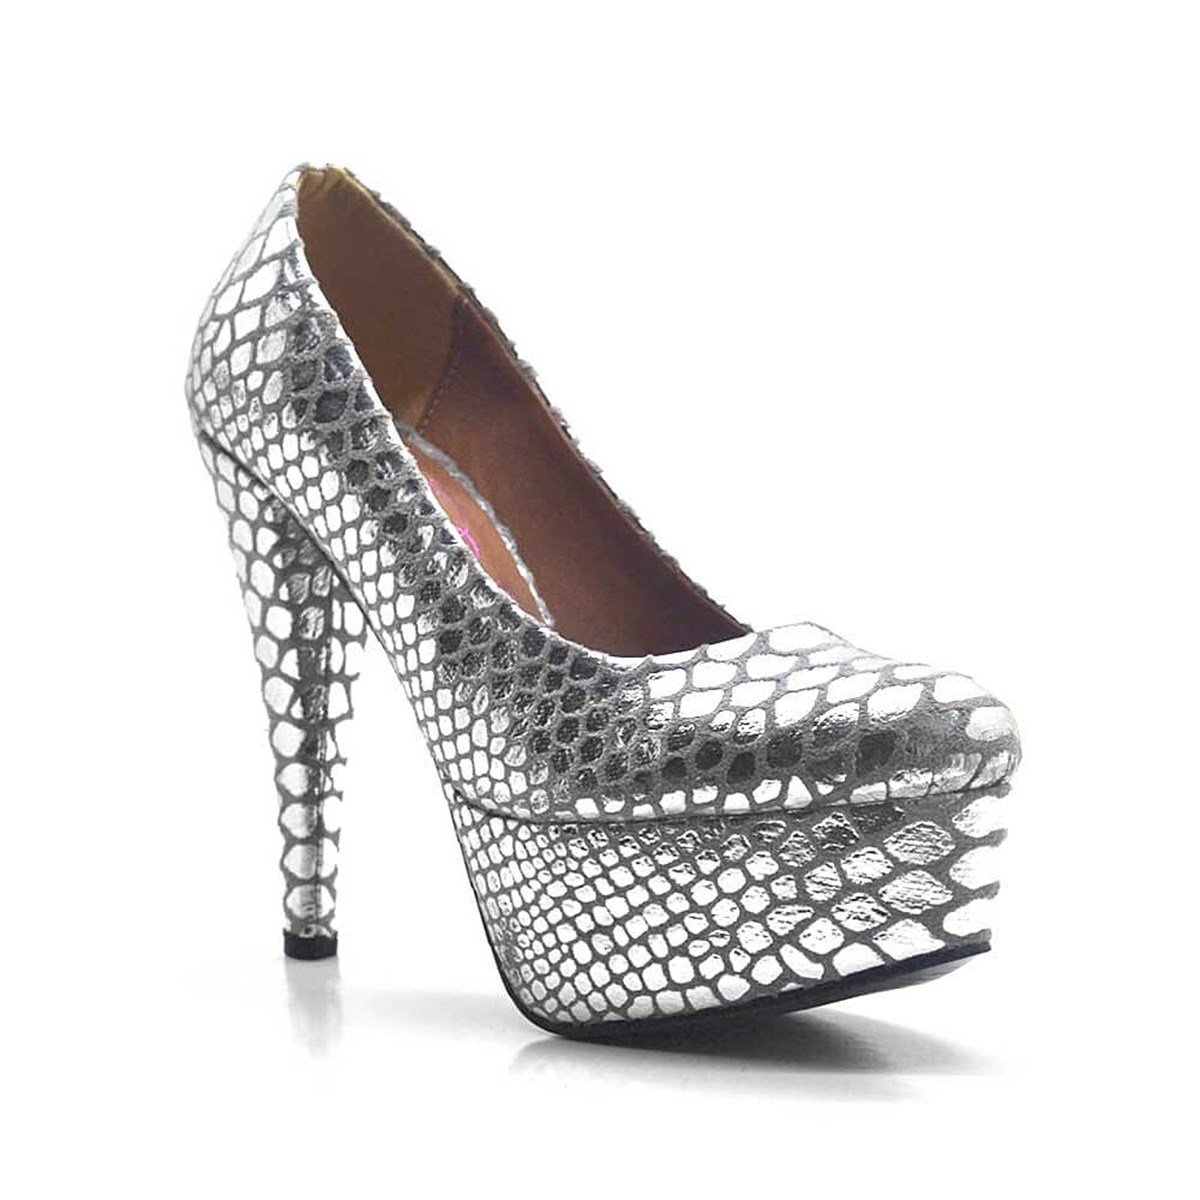 Gümüş Baskı Desenli Platform Topuk Kadın Ayakkabı